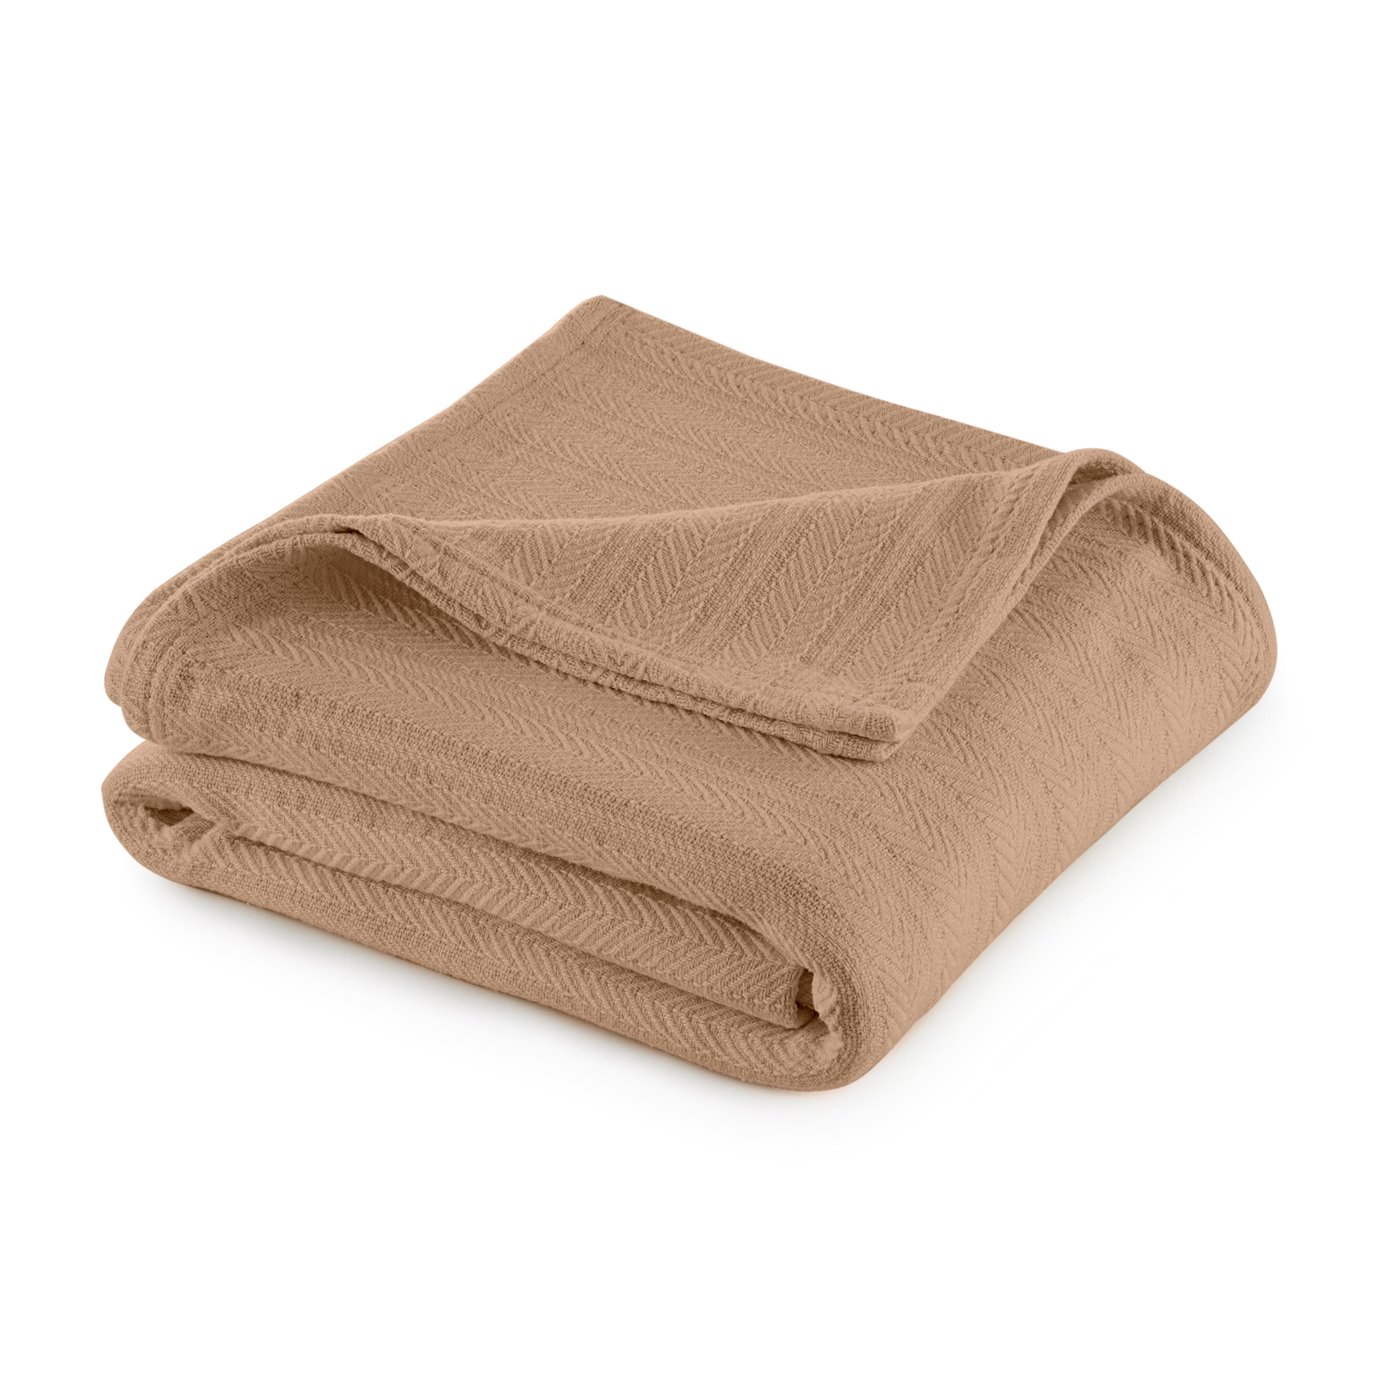 Vellux Cotton Full/Queen Tan Blanket